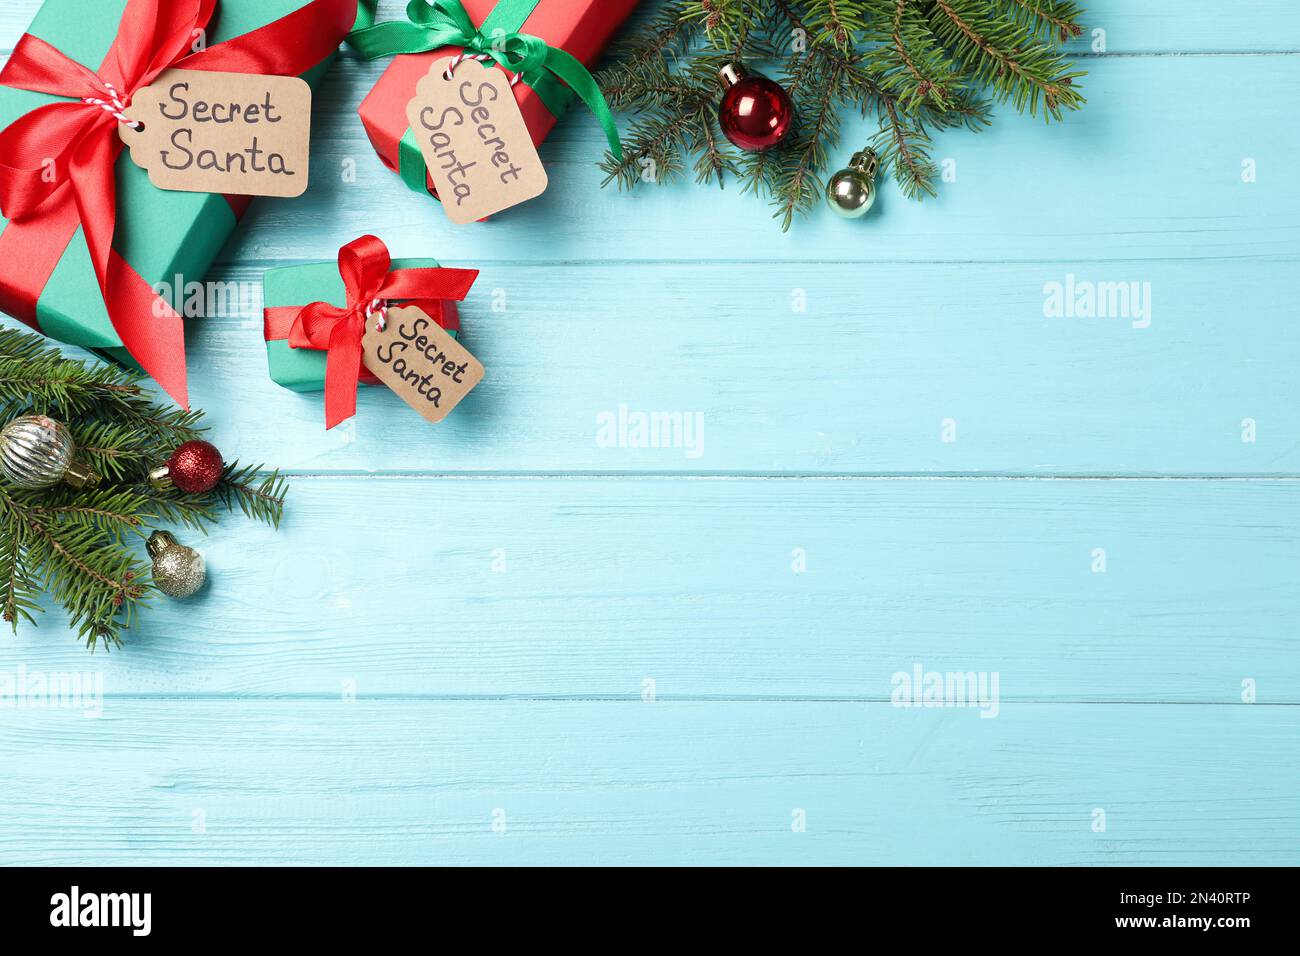 Flach liegend mit Geschenken vom geheimen Weihnachtsmann auf türkisfarbenem Holztisch, Platz für Text Stockfoto